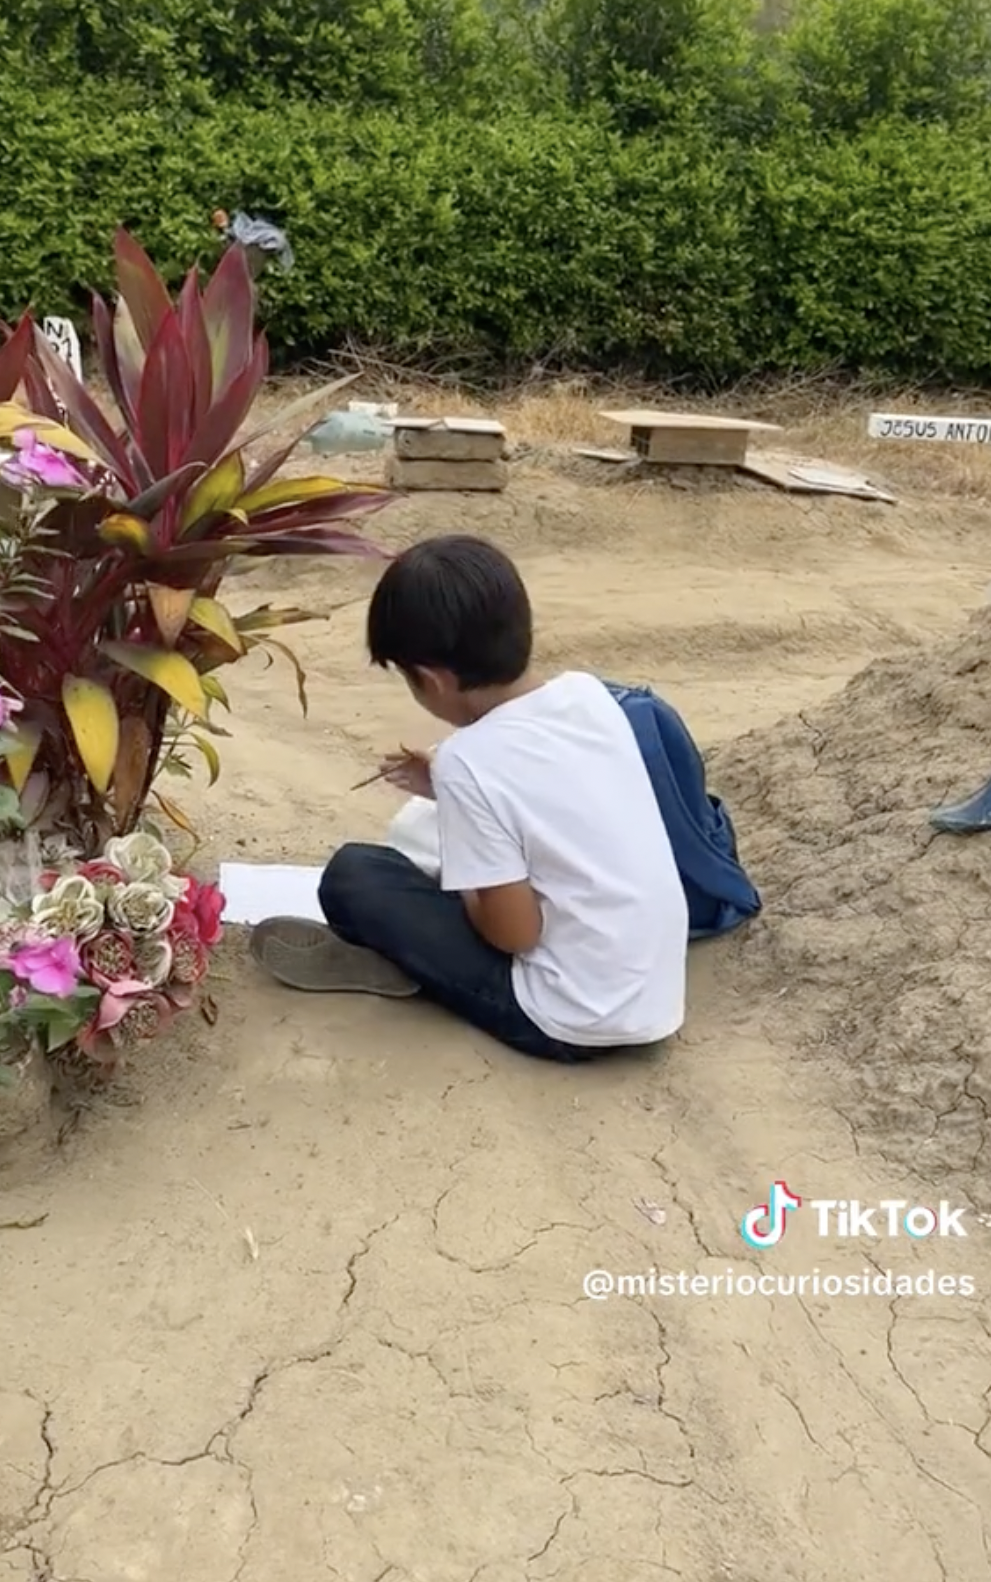 Kike macht seine Hausaufgaben am Grab seiner verstorbenen Mutter. | Quelle: tiktok.com/@misteriocuriosidades